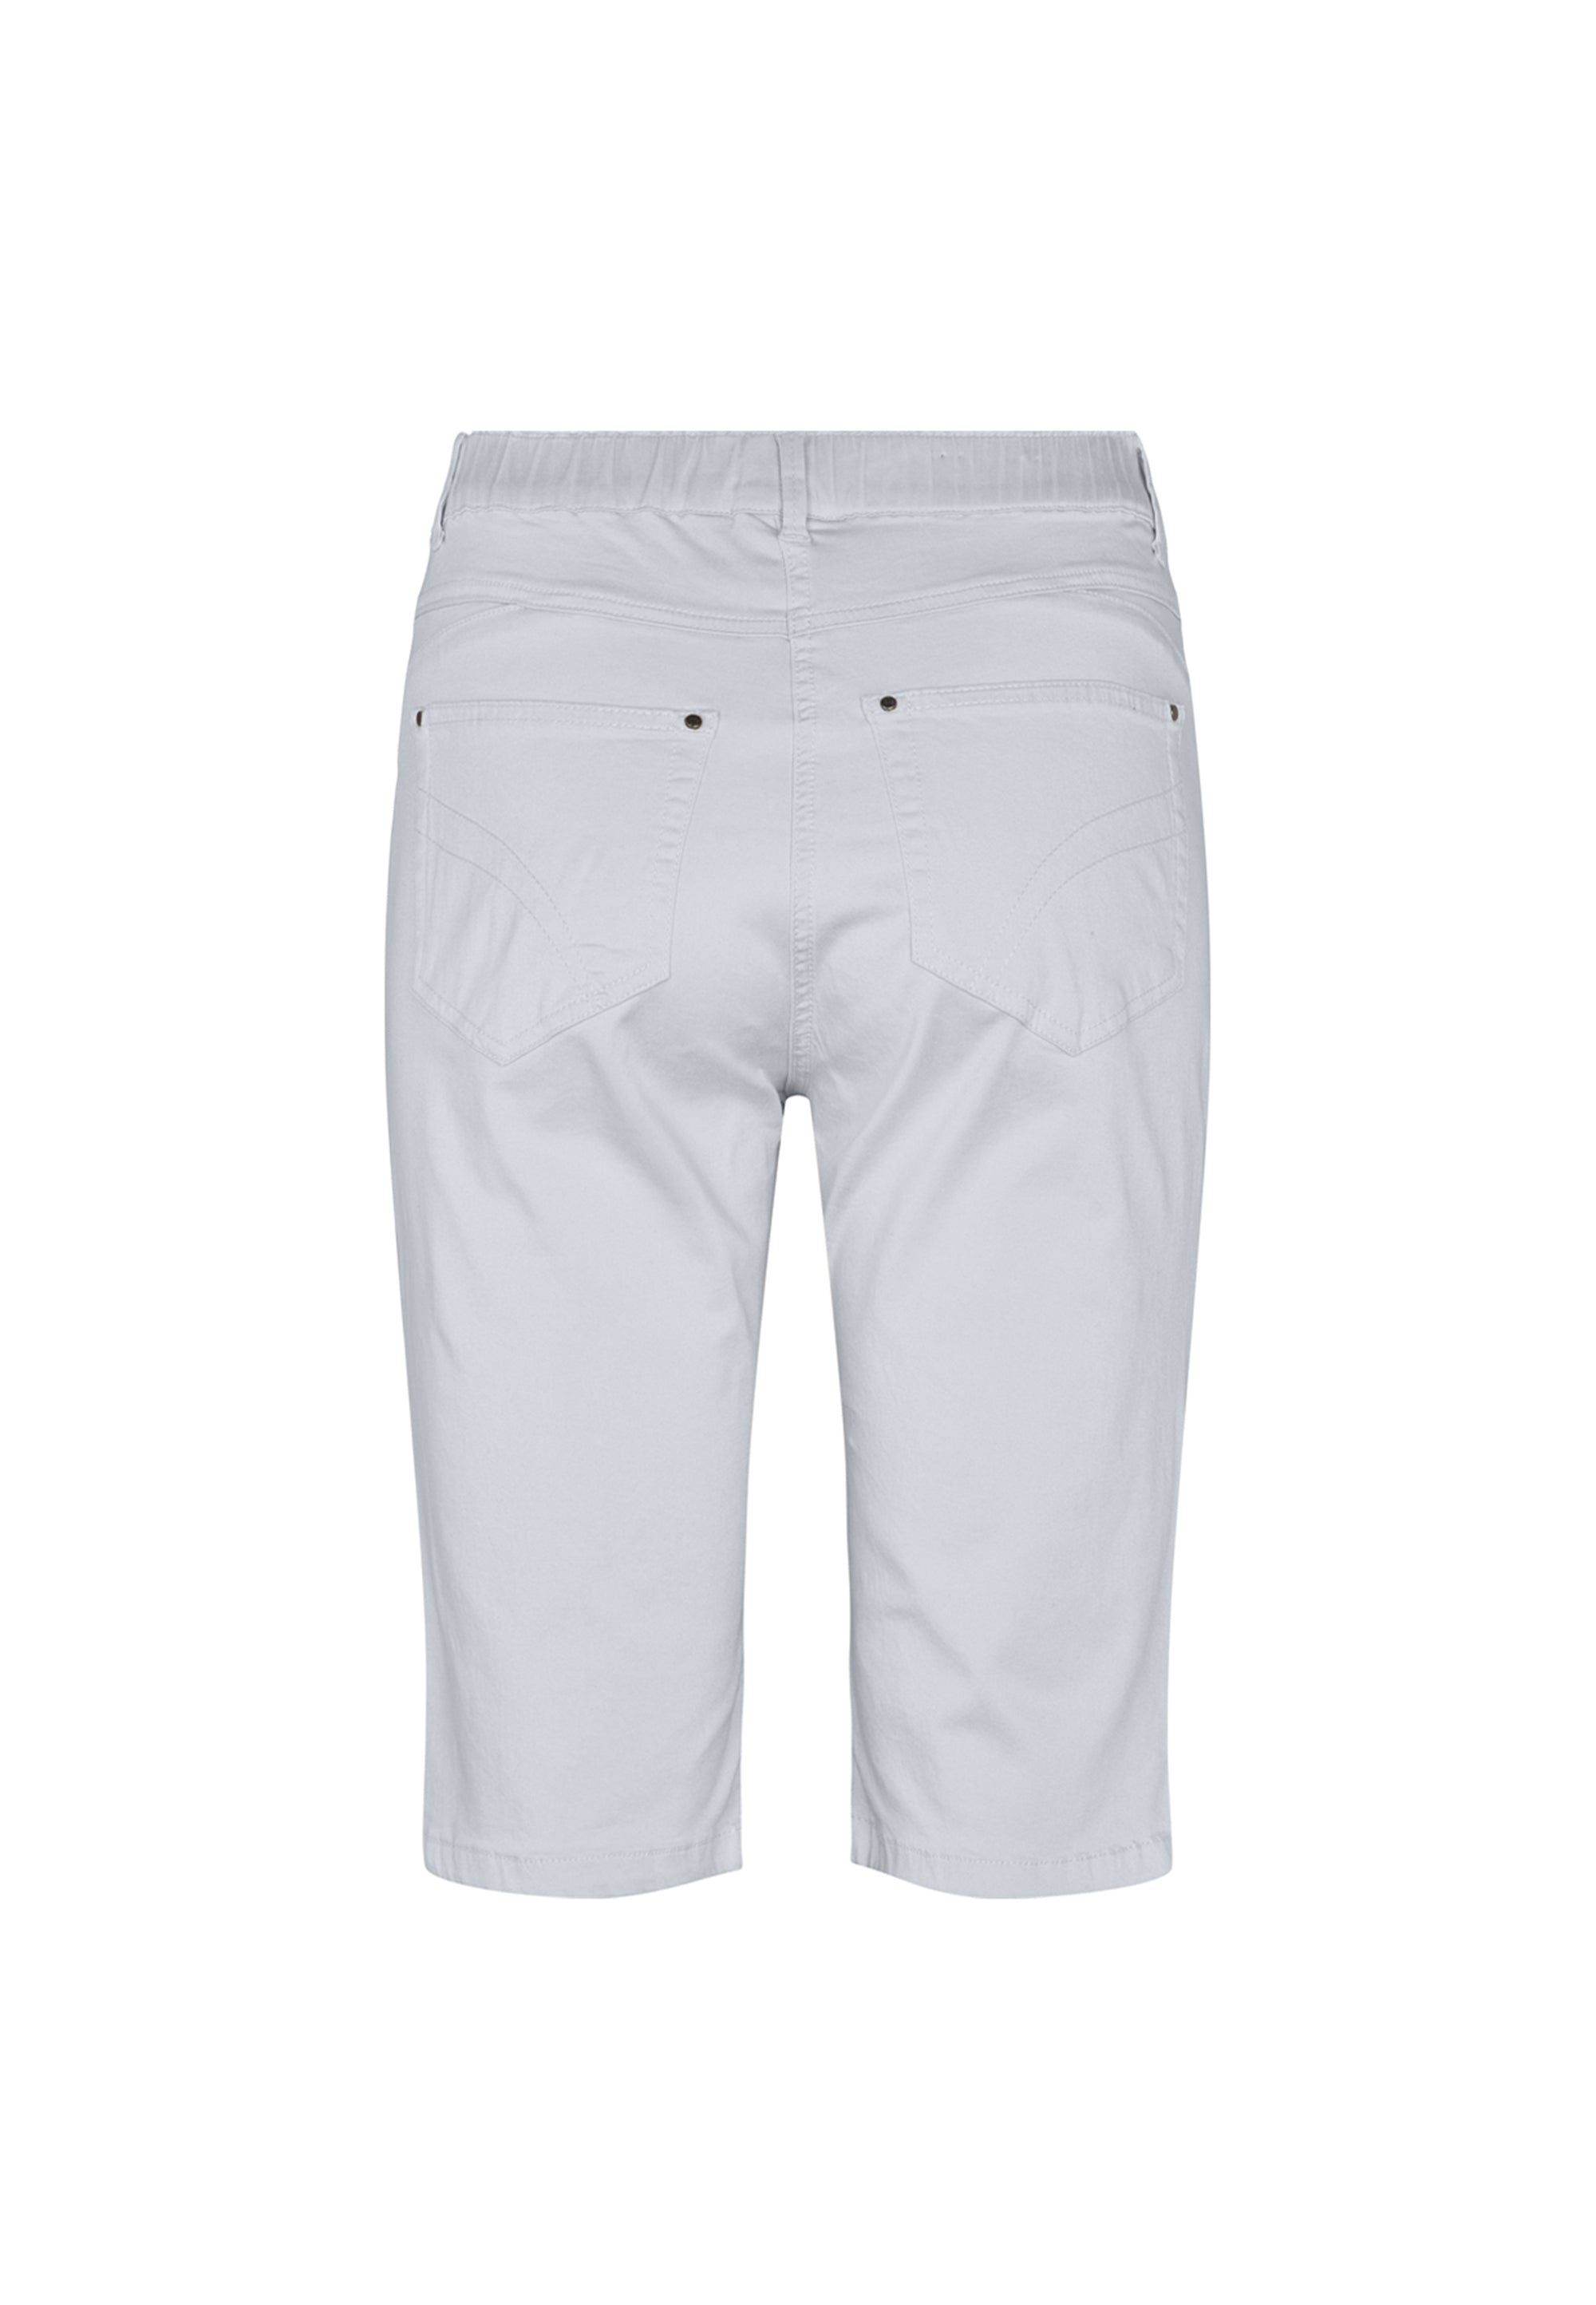 LAURIE  Hannah Regular Shorts Trousers REGULAR 10122 White